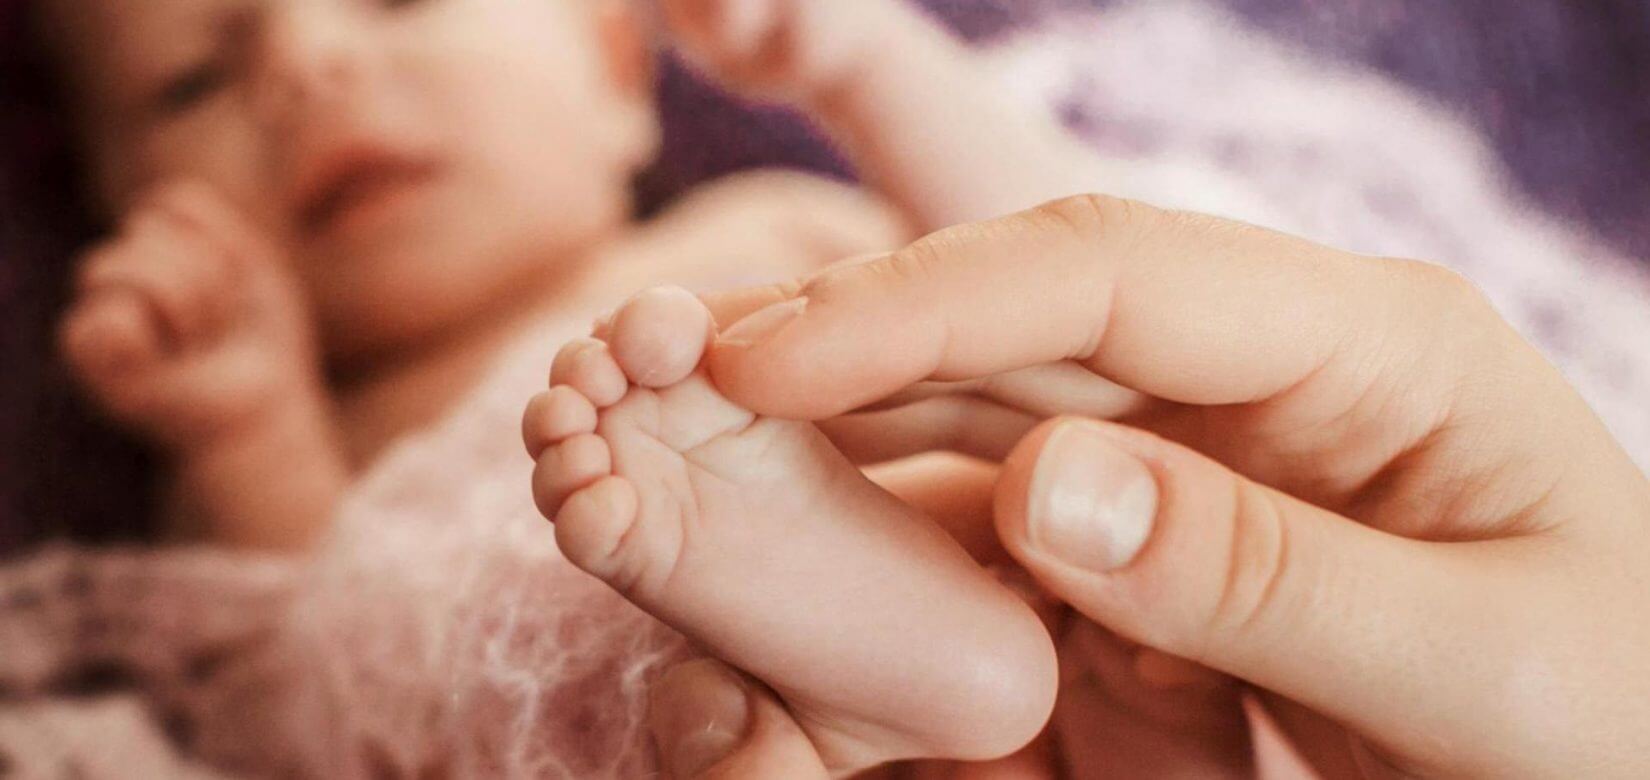 8 συνηθισμένα συμπτώματα στο μωρό μας  που μας αγχώνουν (αλλά δεν πρέπει!)